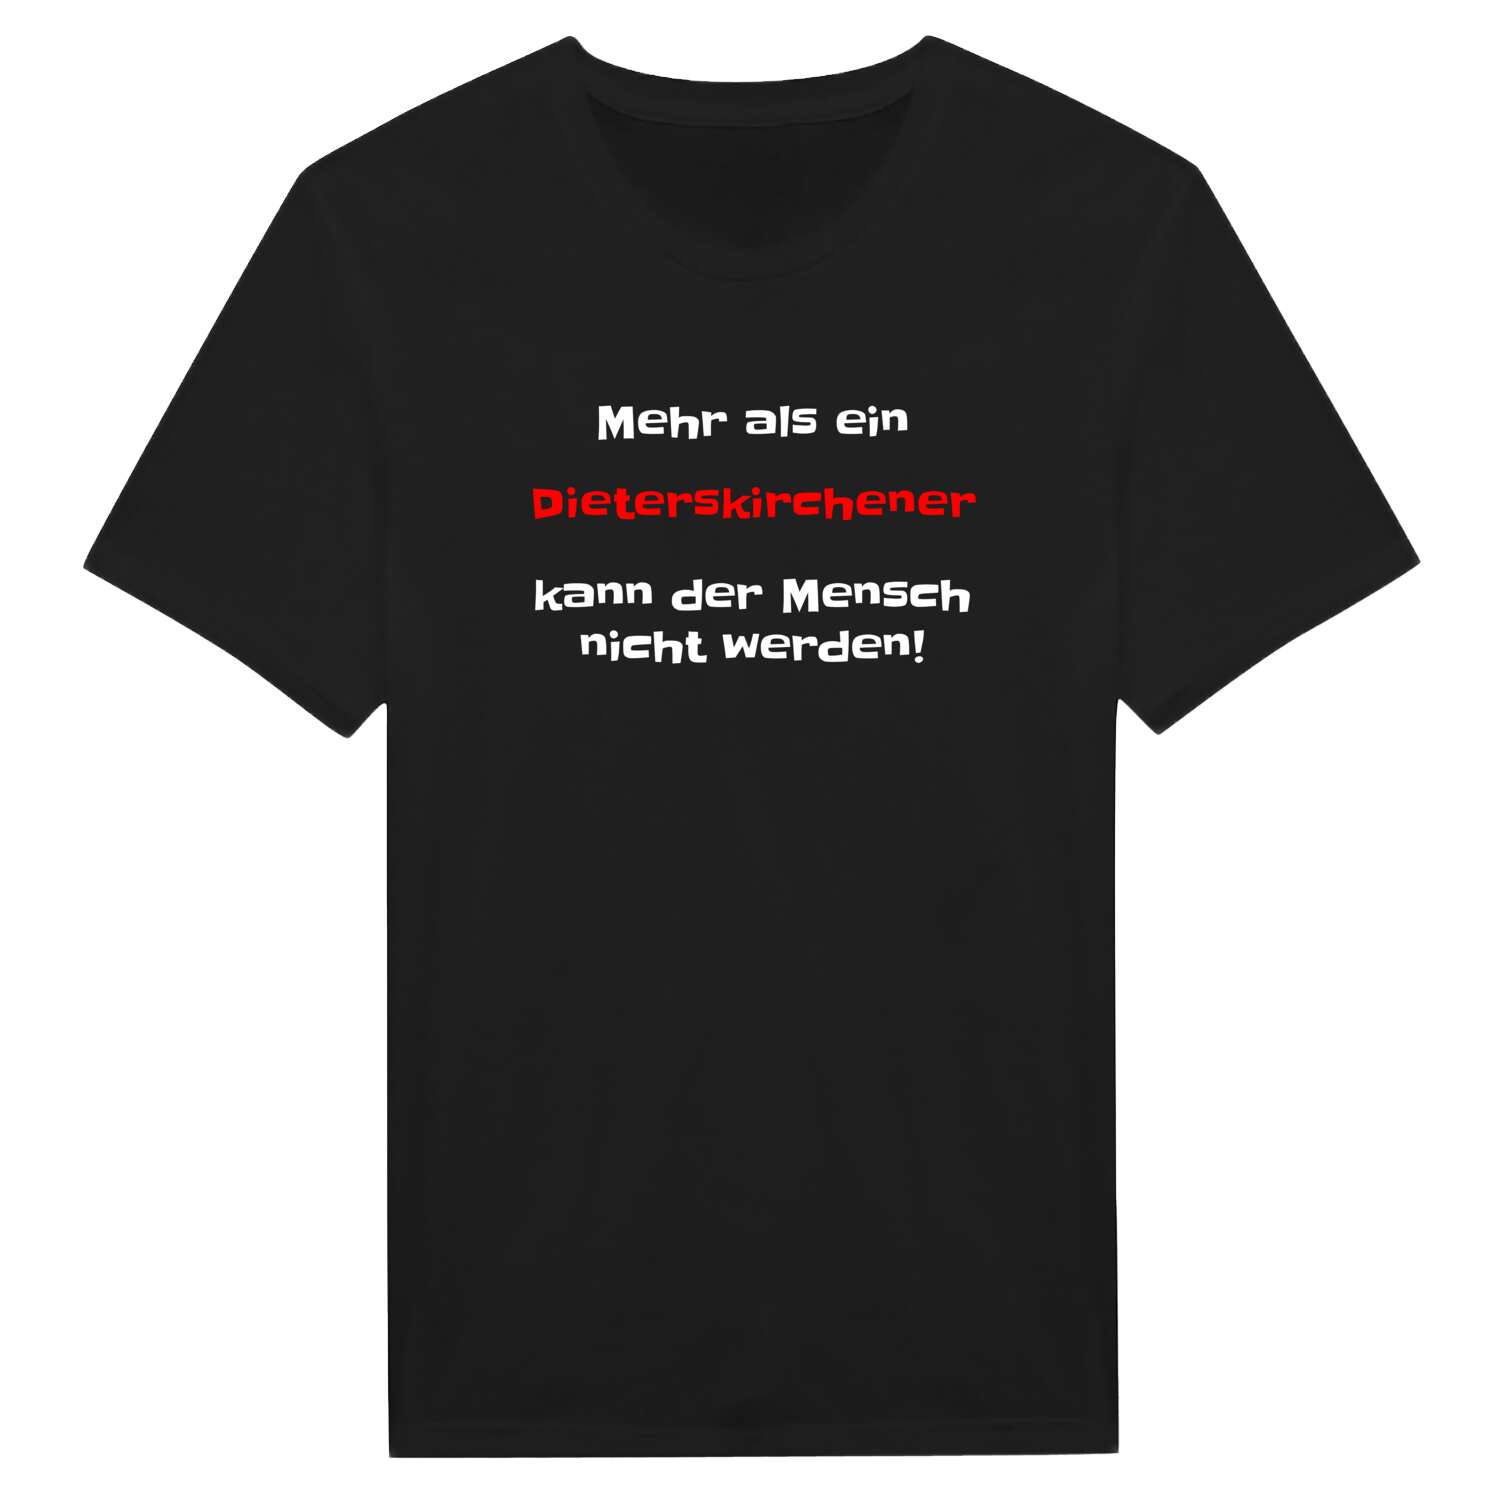 Dieterskirchen T-Shirt »Mehr als ein«